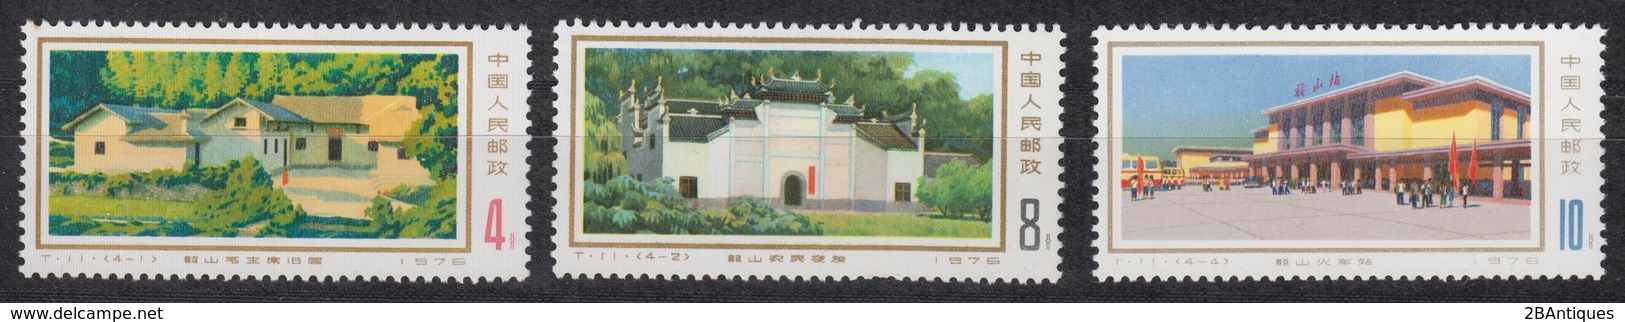 PR CHINA 1976 - Shaoshan Revolutionary Sites MNH** OG Short Set - Neufs